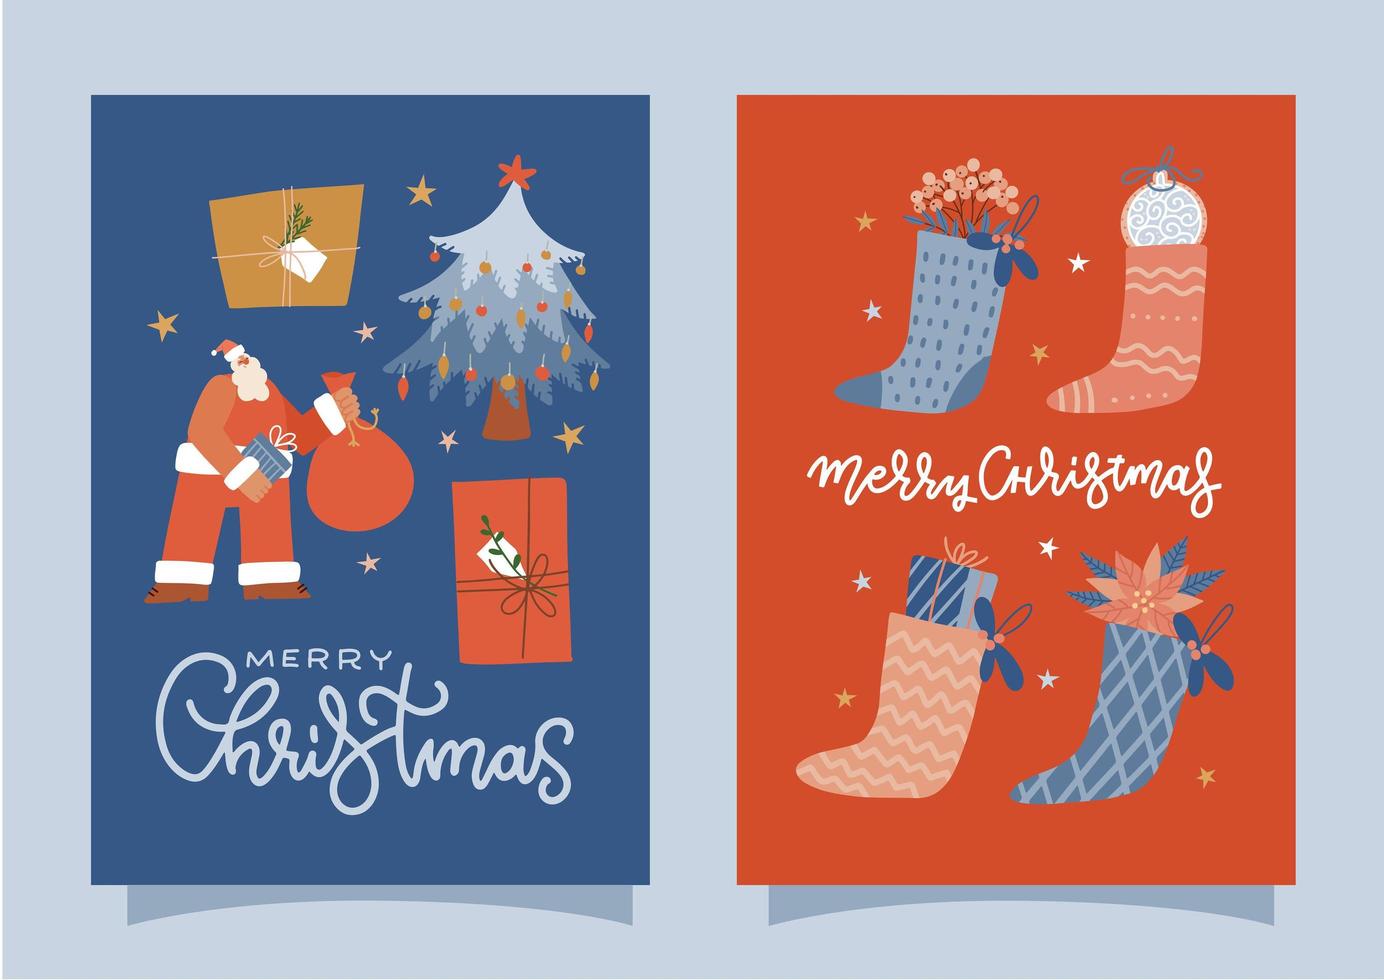 verzameling merry christmas felicitatiekaarten met het karakter van de kerstman, kerstsok vol geschenken. vector platte cartoon afbeelding met belettering tekst